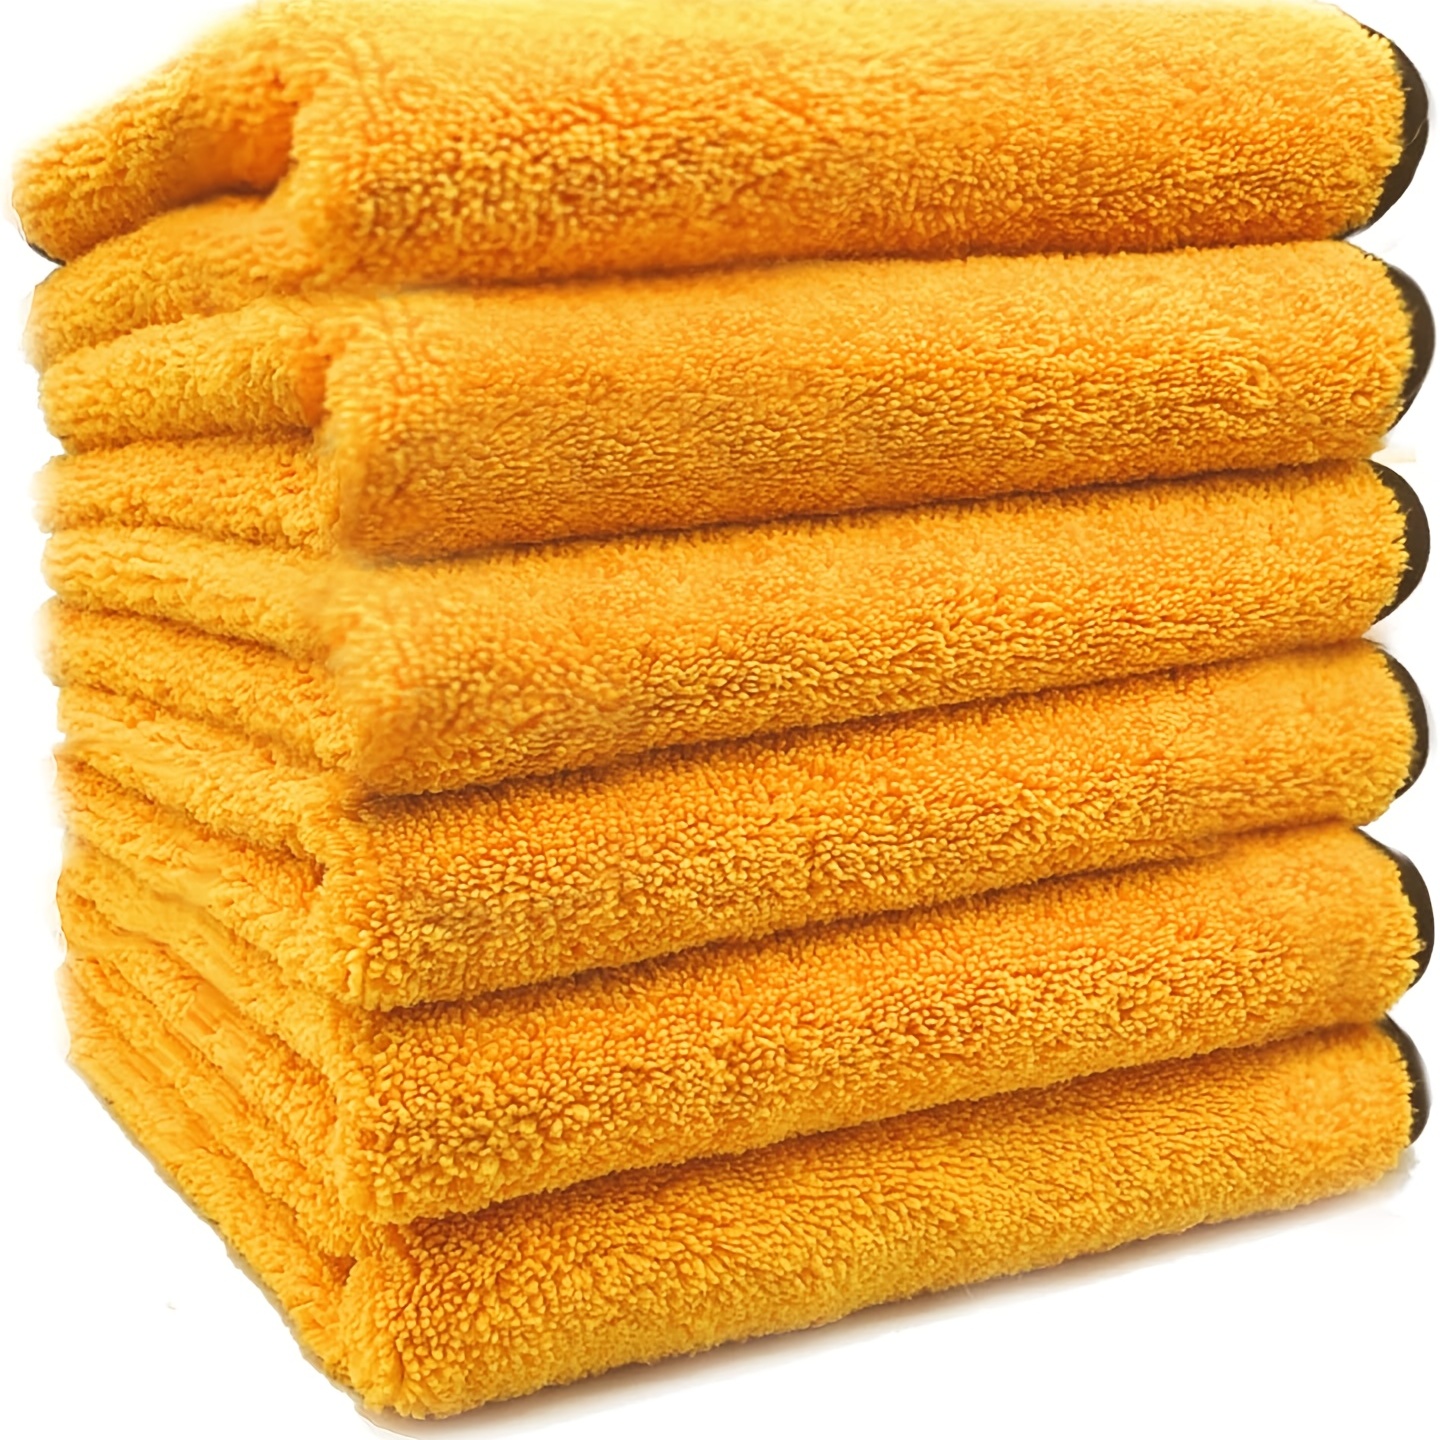 Chemical Guys Professional Grade Premium Microfiber Towel Gold